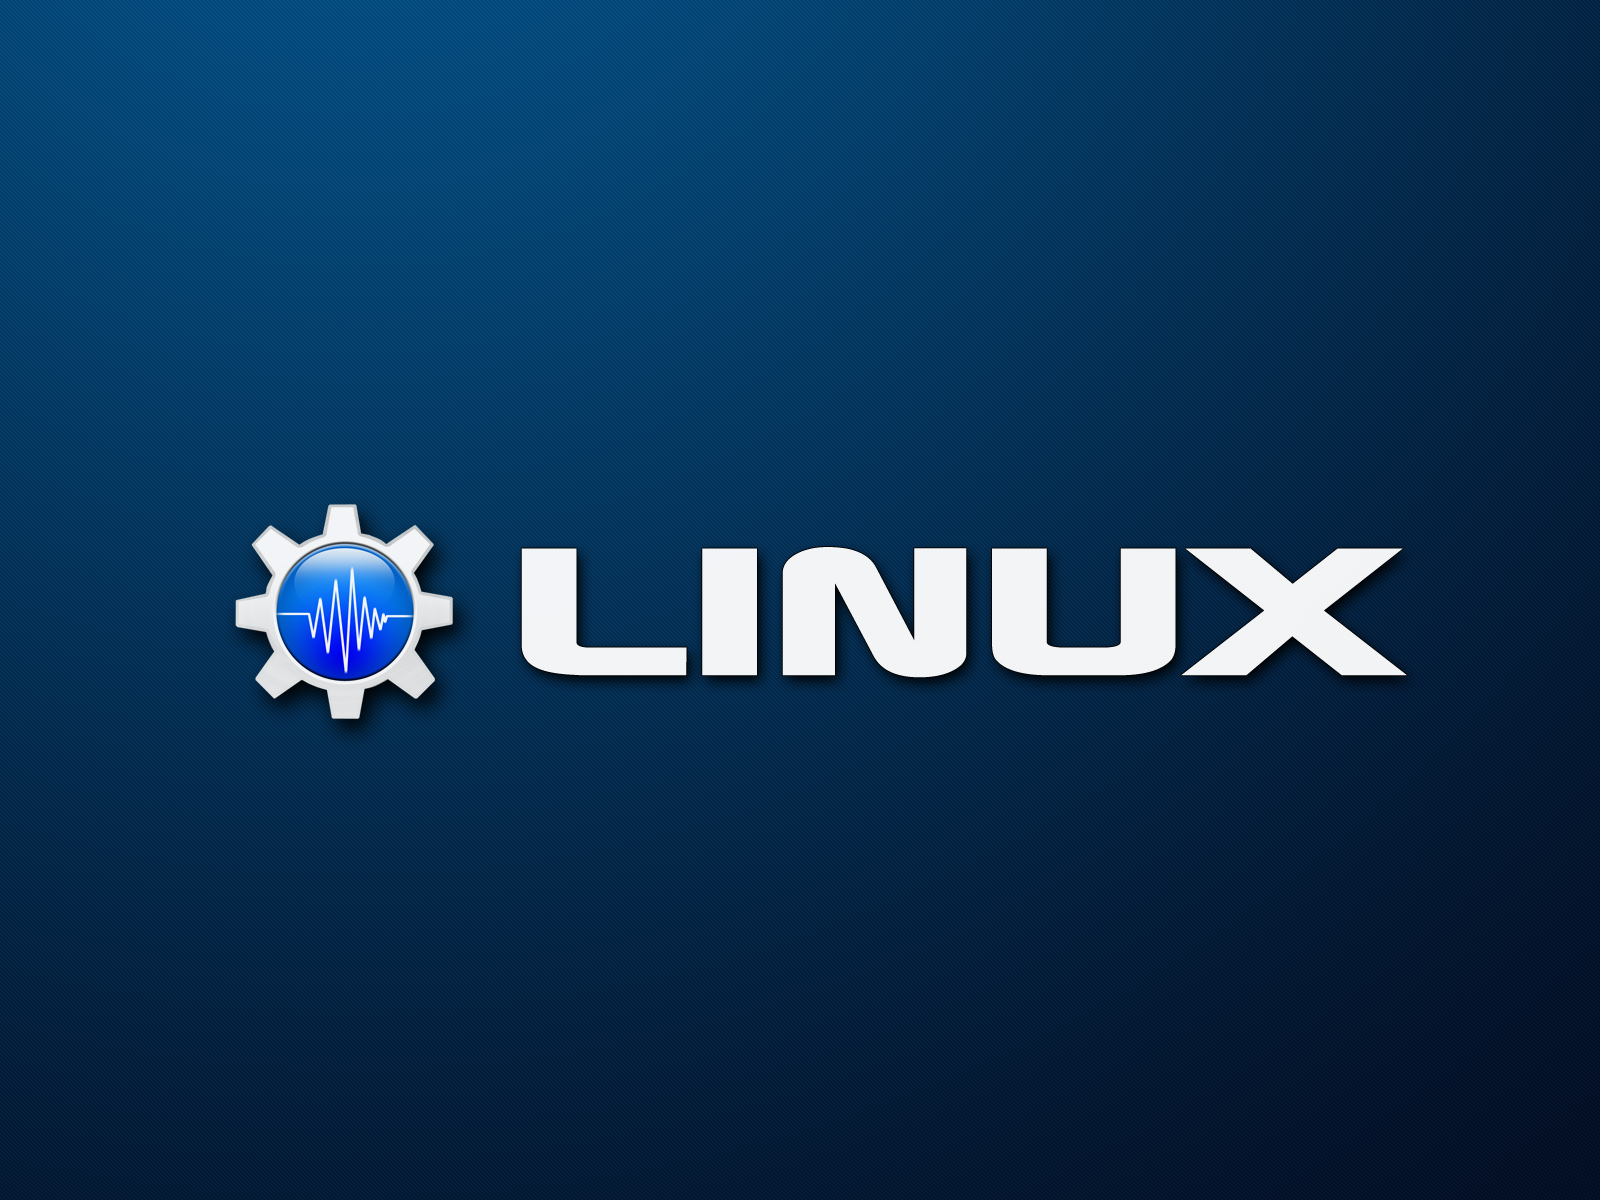 linux comanda lo sfondo,blu,testo,font,cielo,blu elettrico